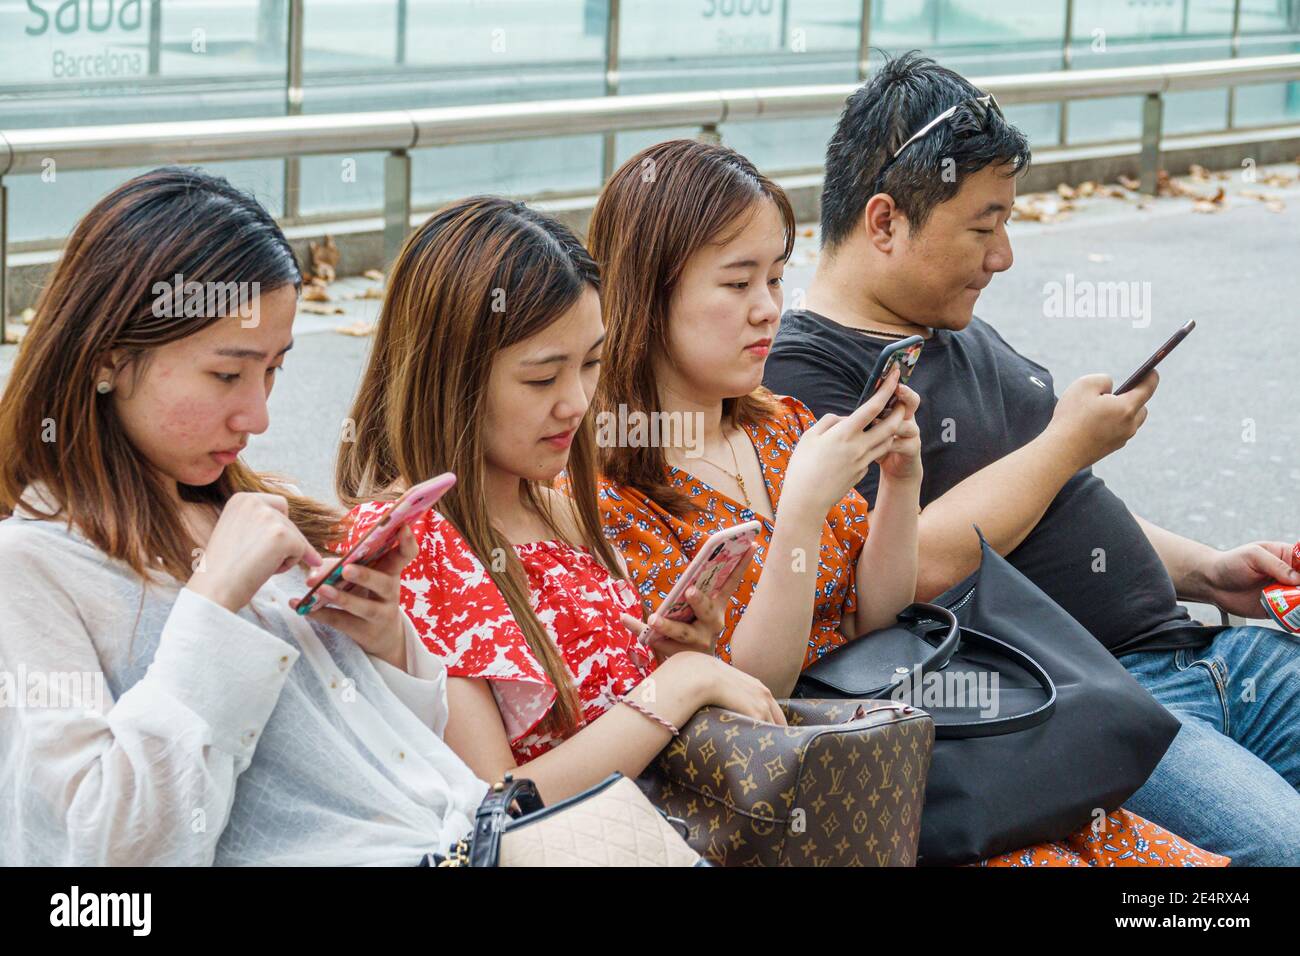 Espagne Barcelone Catalogne Catalunya Passeig de Gracia quartier des affaires banc Asiatique garçon fille adolescent adolescents adolescents assis à l'aide d'un smartphone sma Banque D'Images